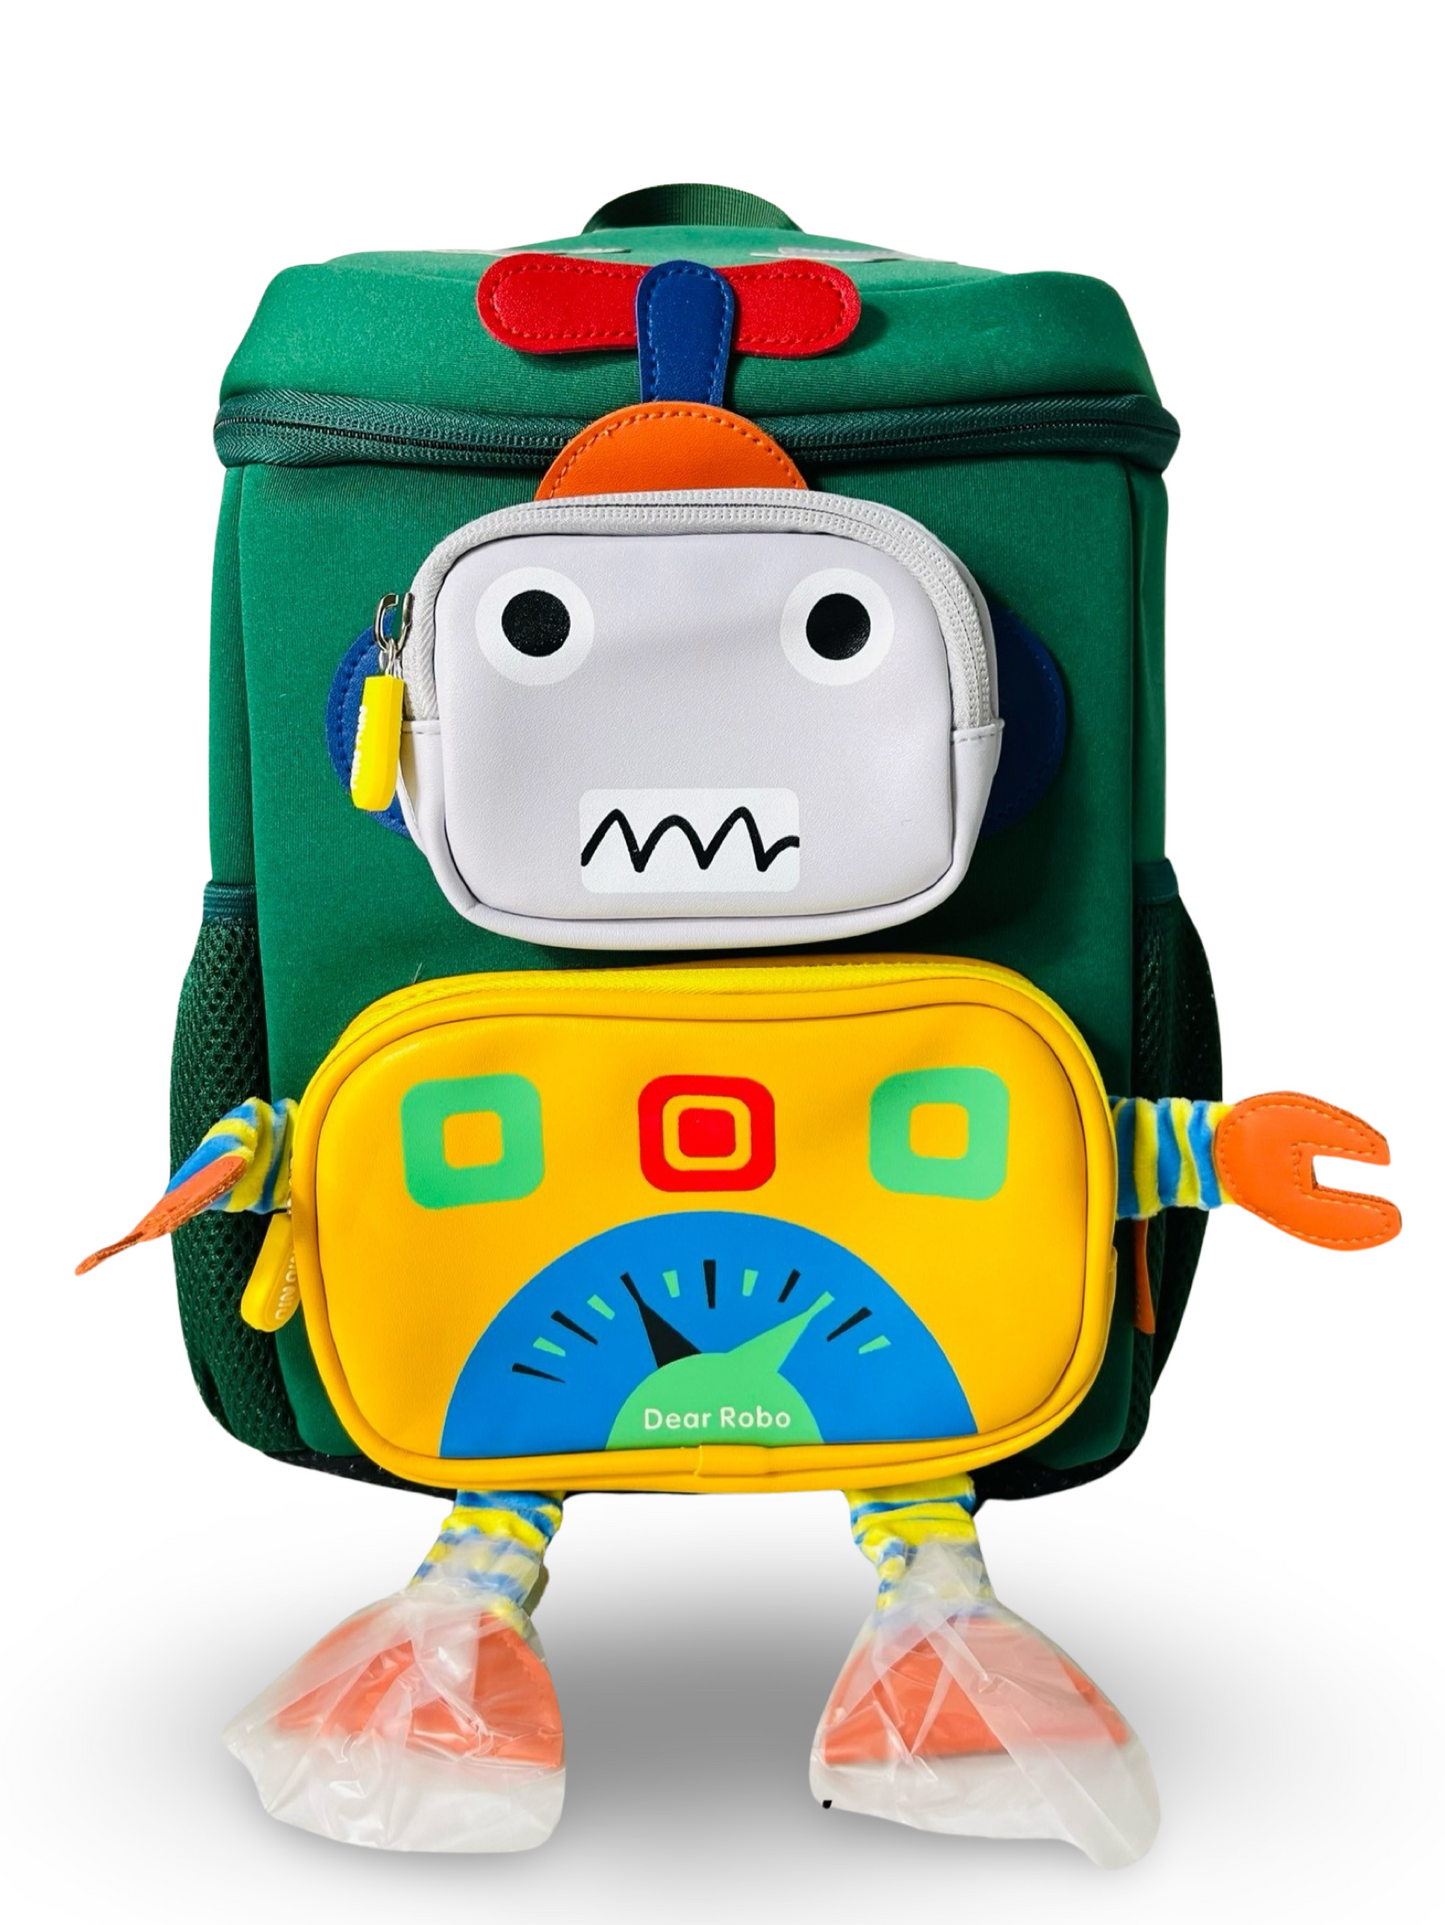 3D Robot Design School Bag with Large Capacity for Kindergarten/ Preschool/ Nursery kids